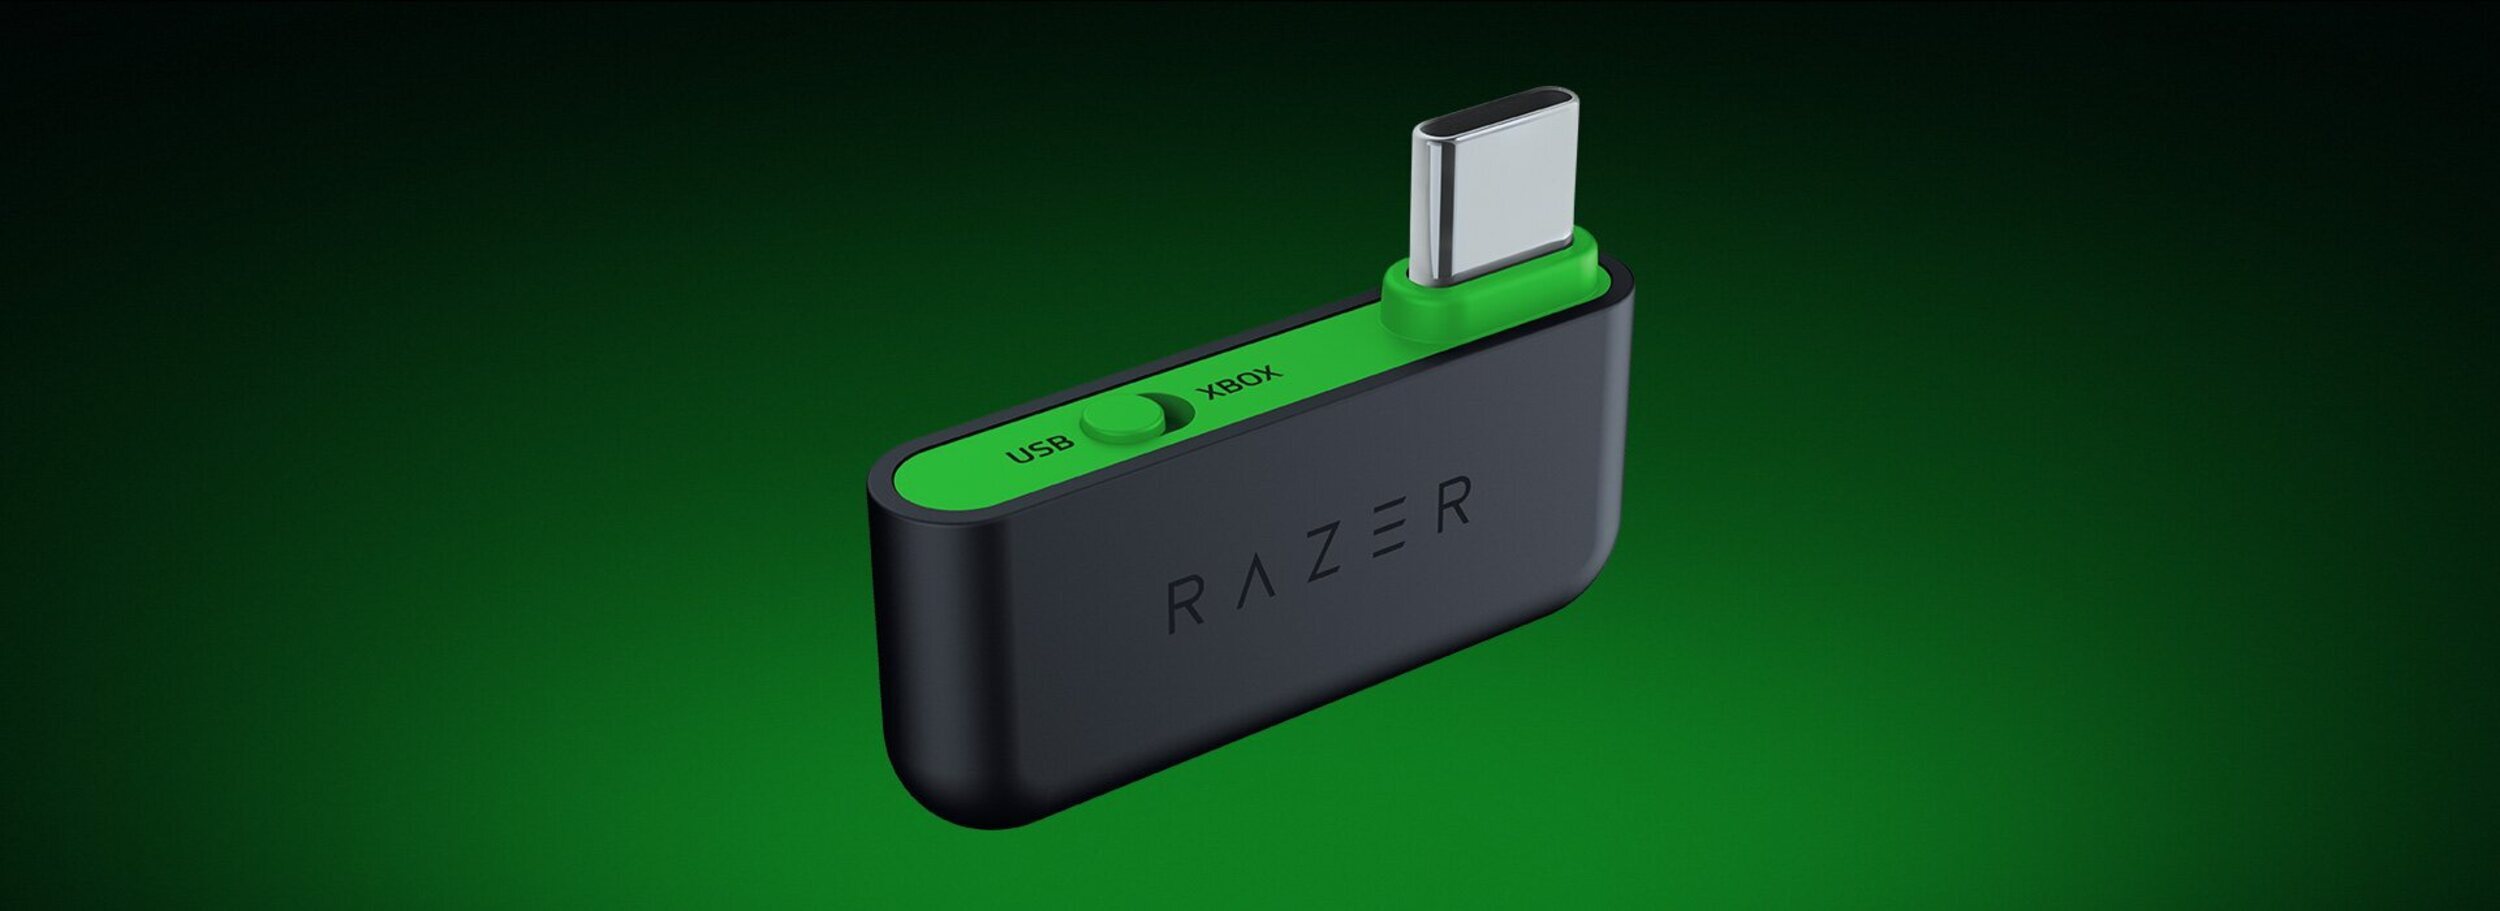 Razer Kaira Hyperspeed - El receptor permite conectar los auriculares a cualquier dispositivo con USB-A o USB-C.